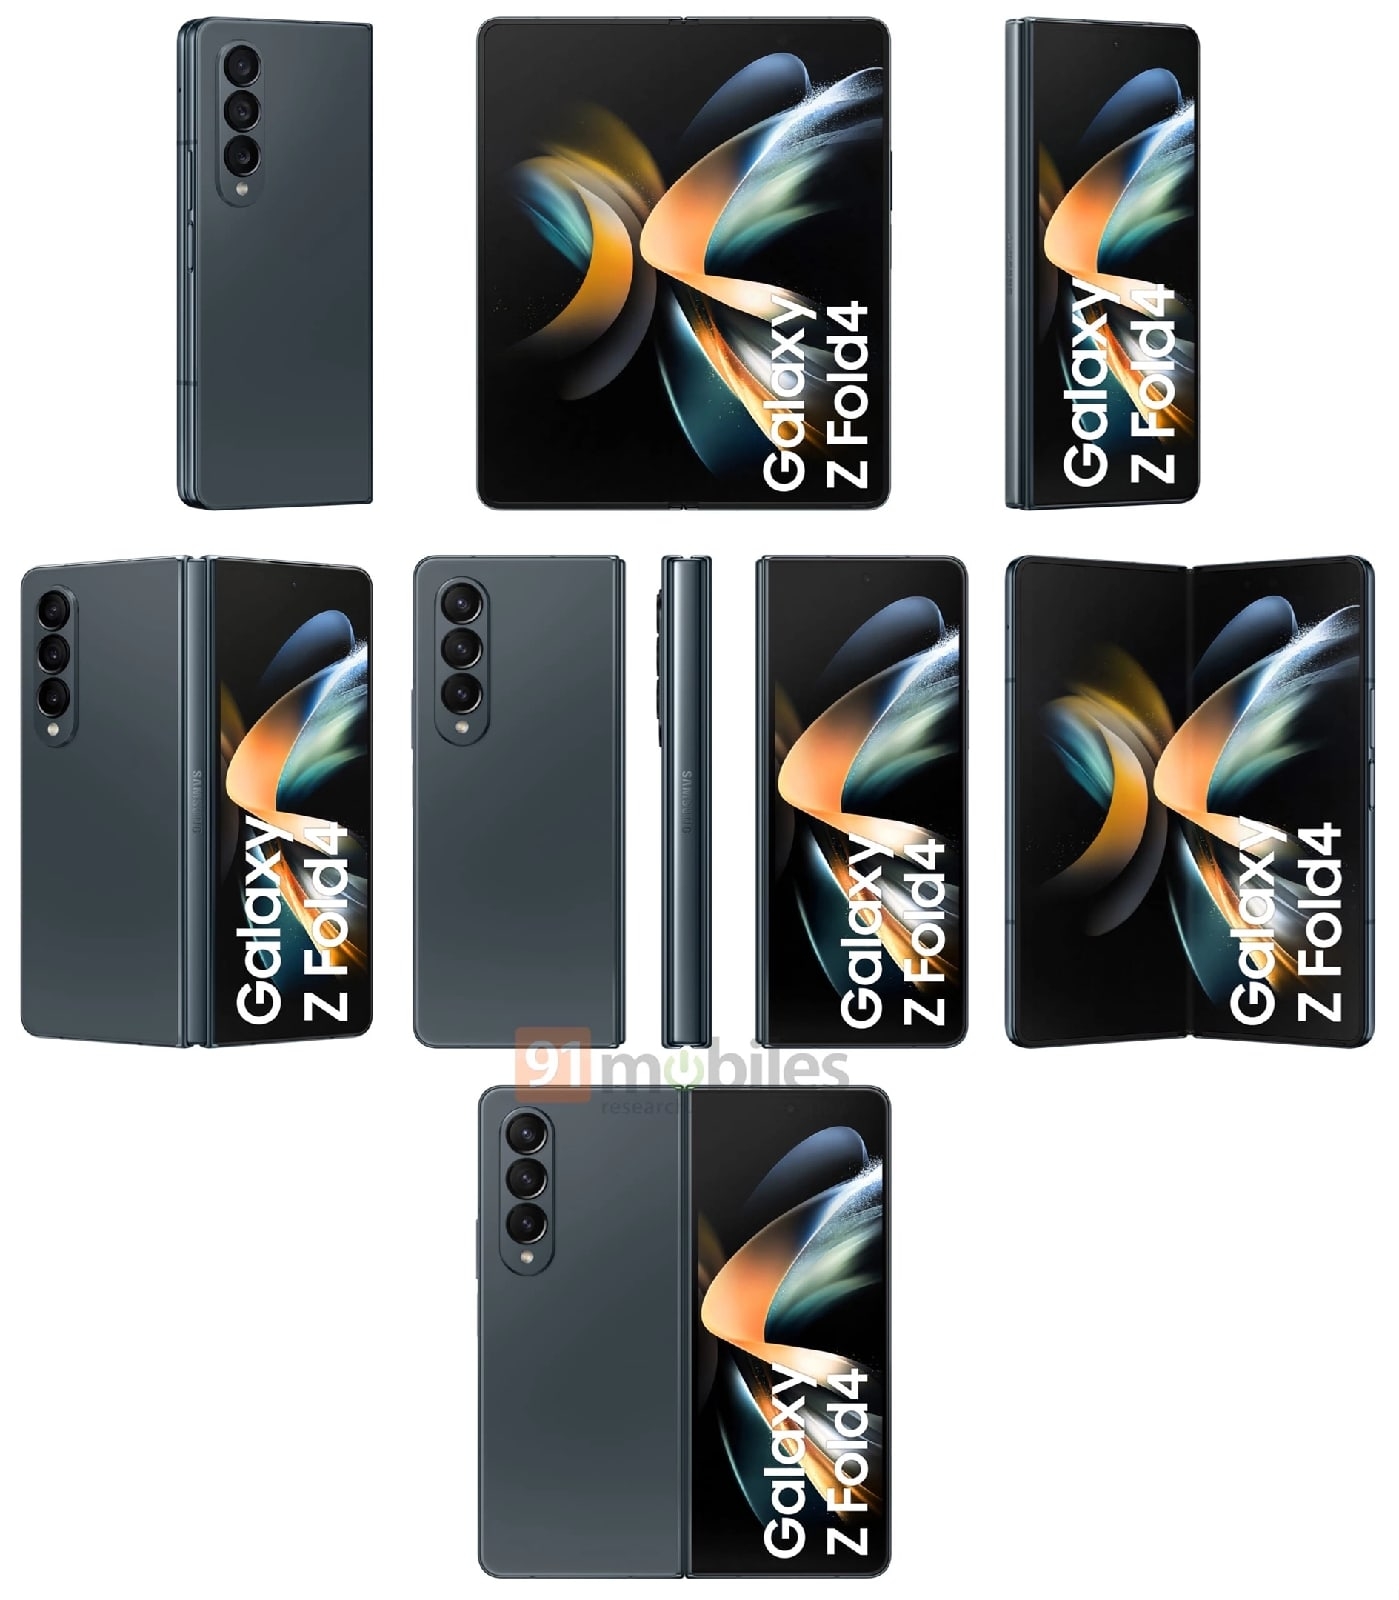 Ловите официальные рендеры складных флагманов Samsung Galaxy Z Fold4 и Z Flip4 от инсайдера Эвана Бласса.